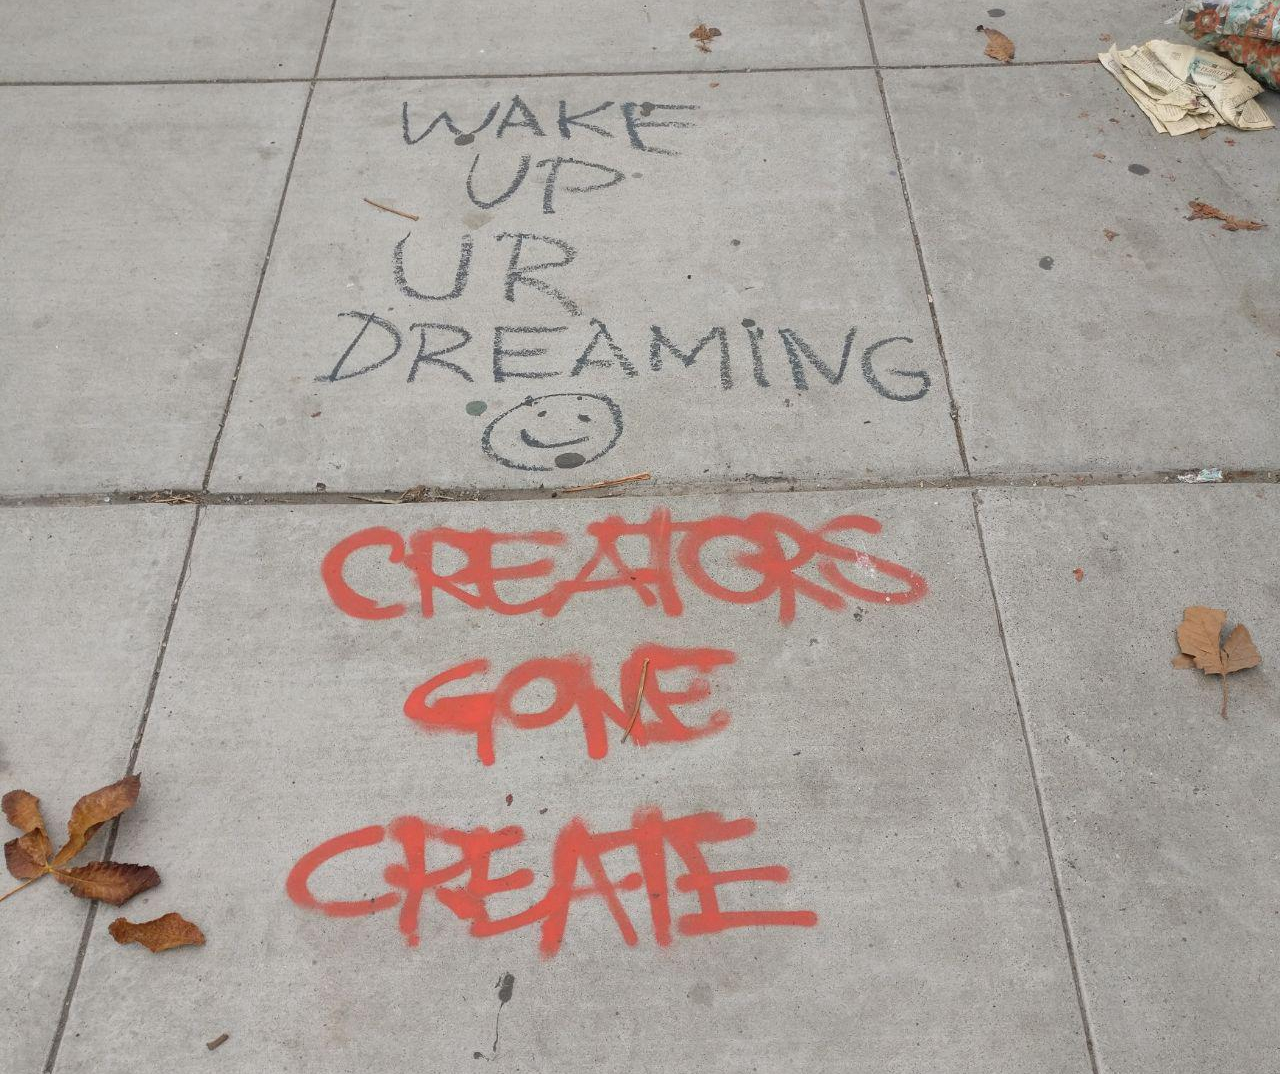 wake up ur dreaming, creators gone create